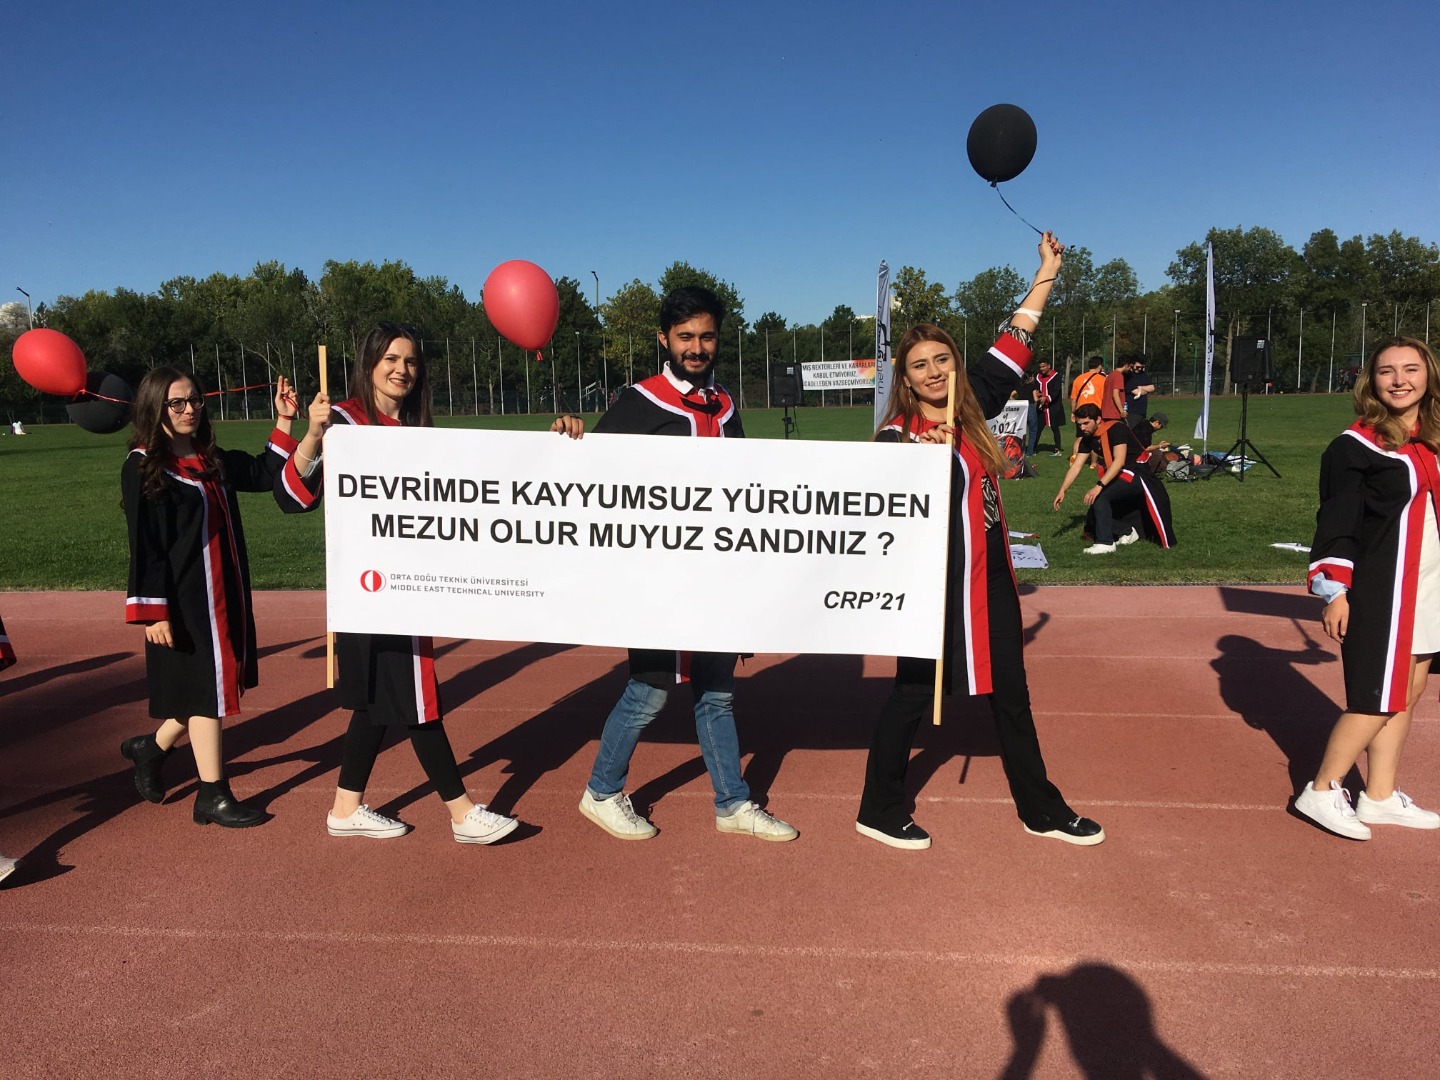 ODTÜ'lü öğrencileri mezuniyet töreninde birbirinden mizahi pankart taşıdılar 14